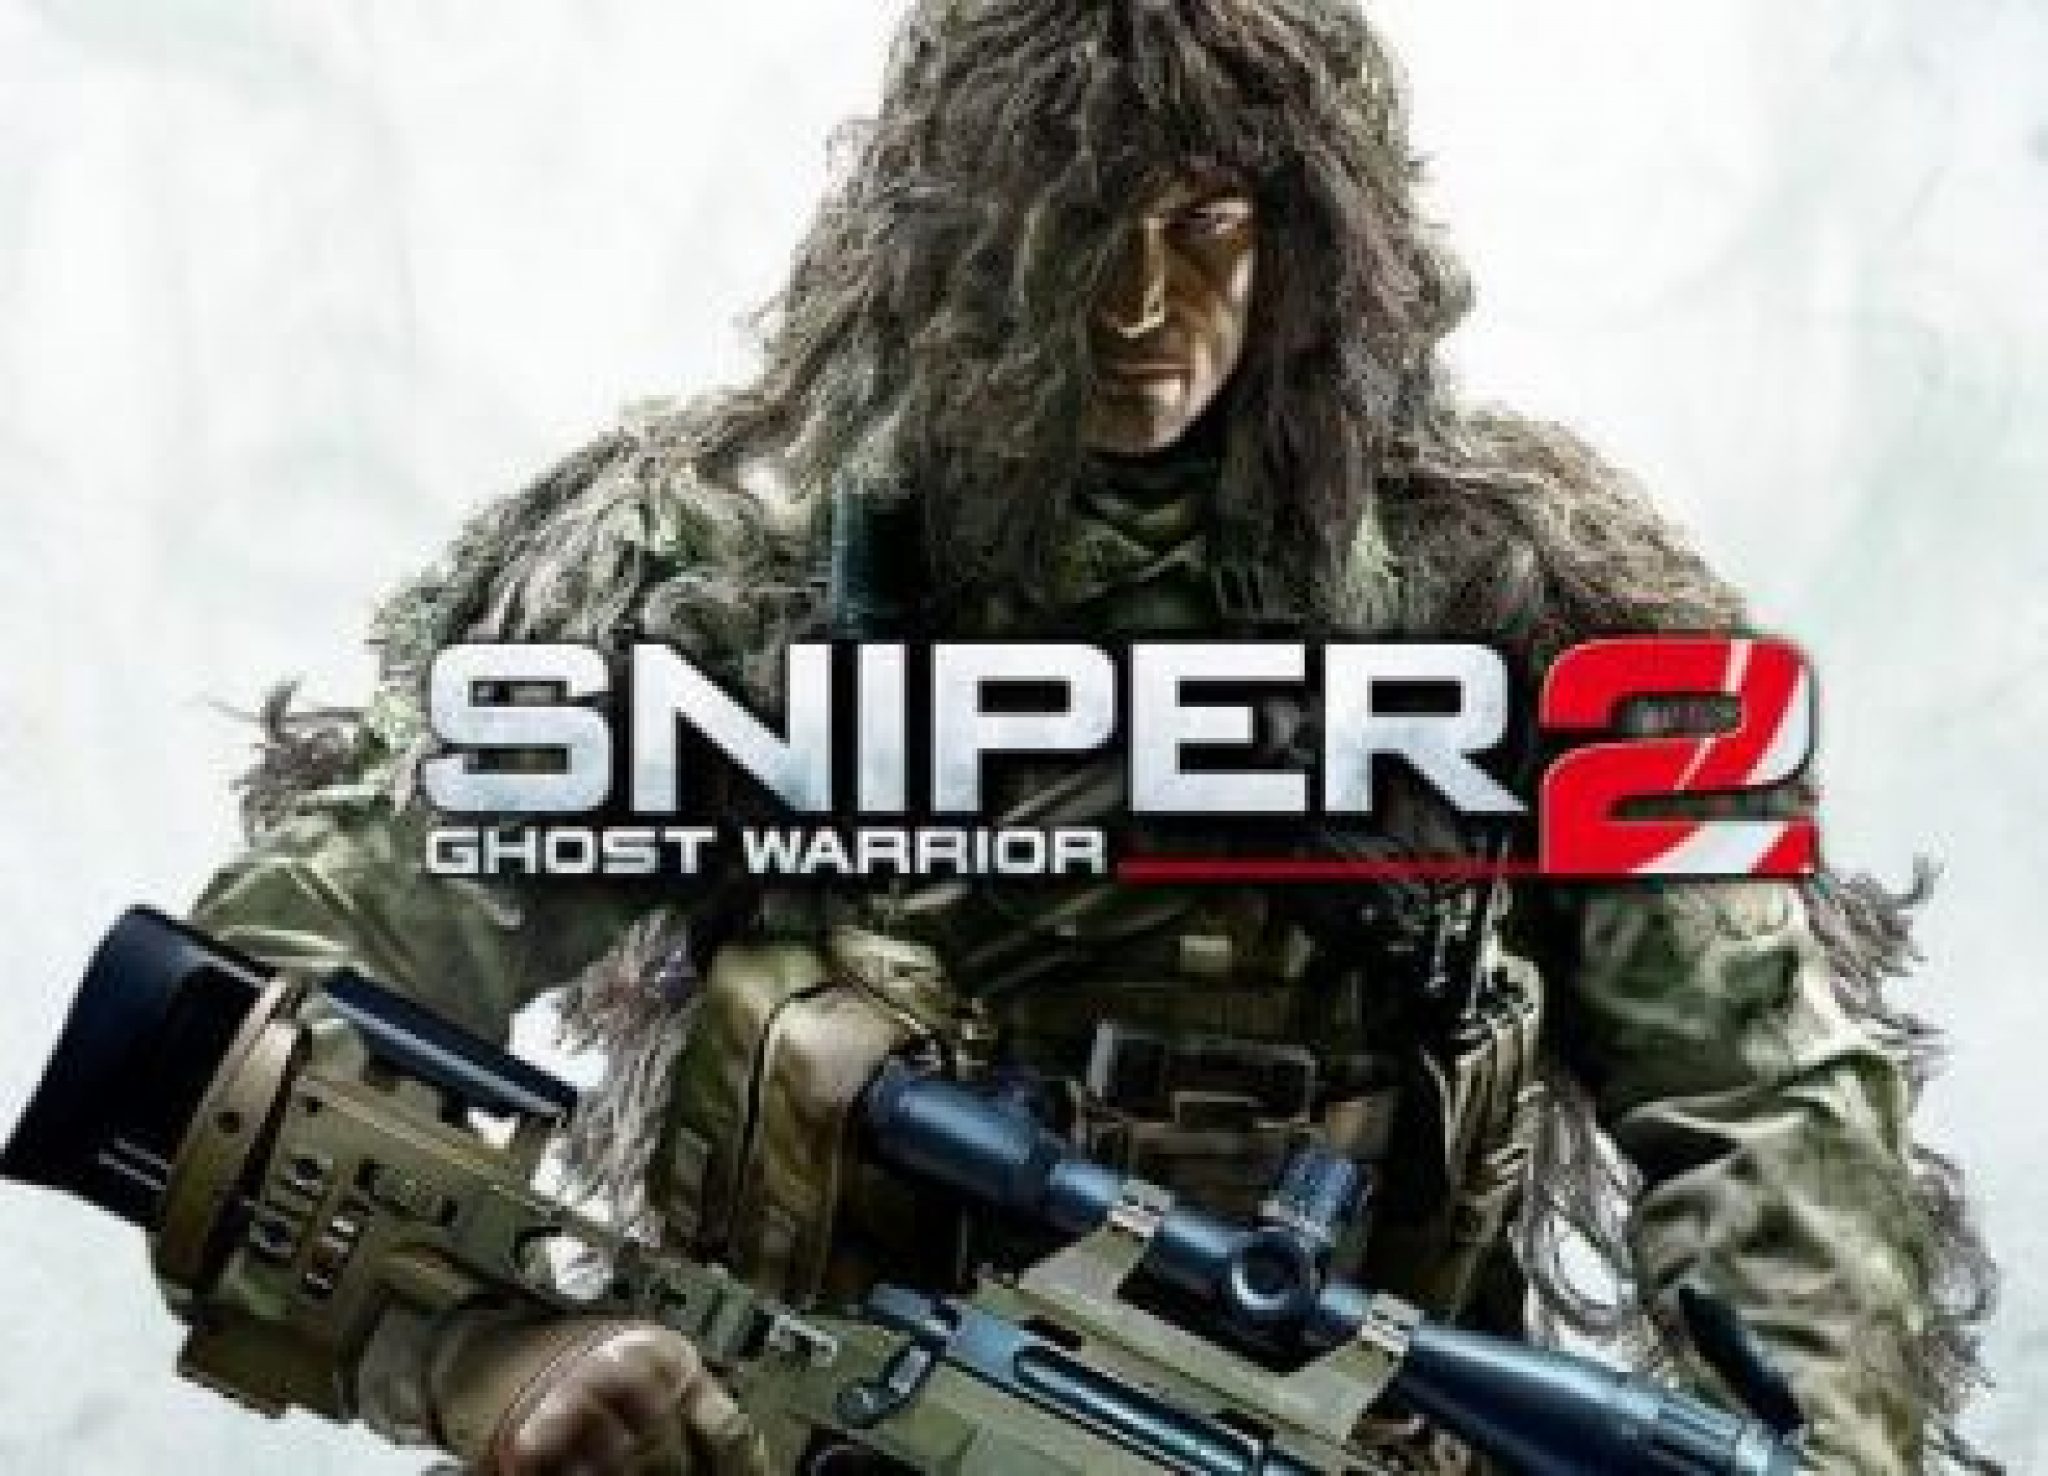 sniper ghost warrior 2 pc setup download